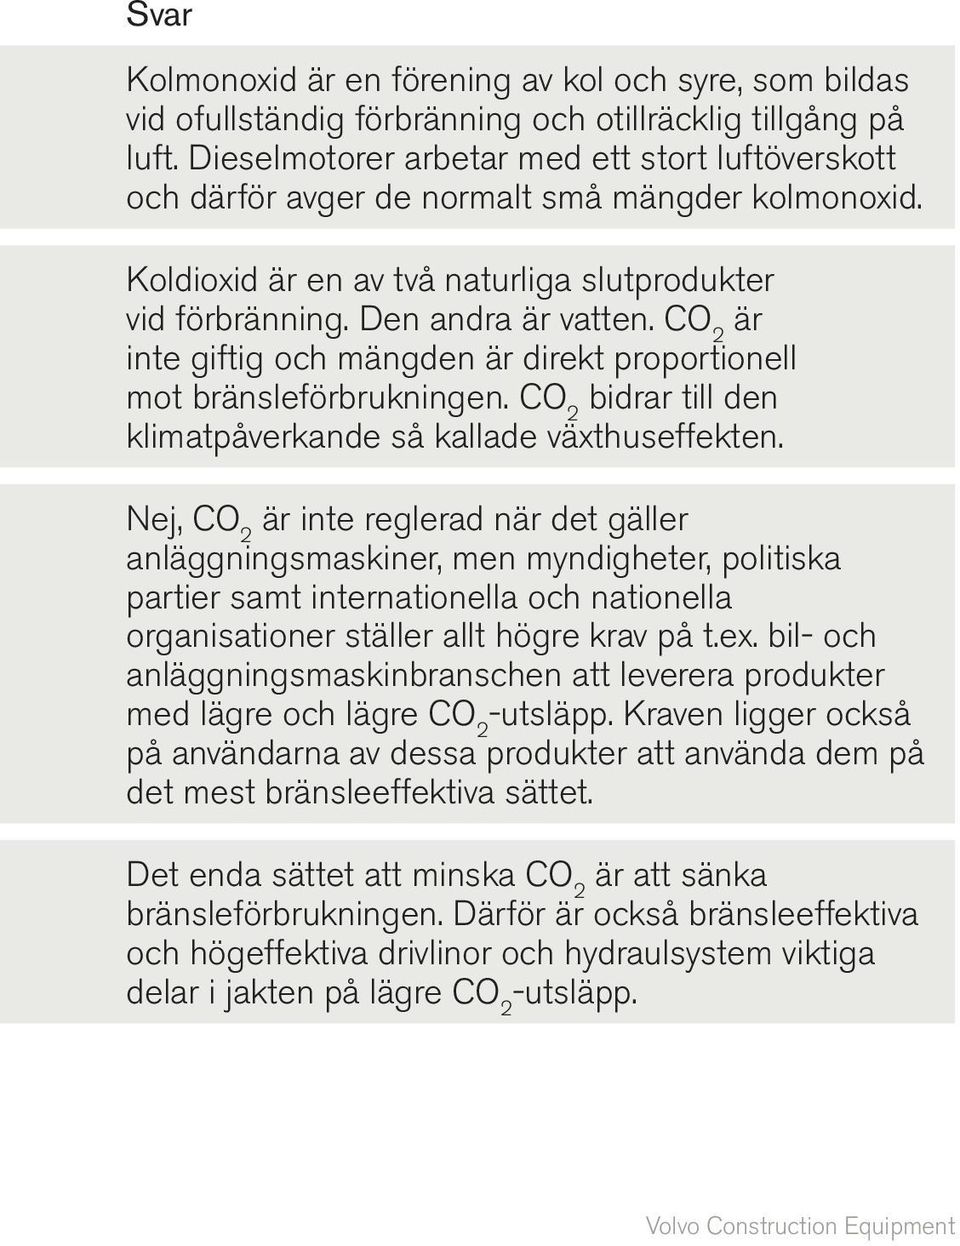 CO 2 är inte giftig och mängden är direkt proportionell mot bränsleförbrukningen. CO 2 bidrar till den klimatpåverkande så kallade växthuseffekten.